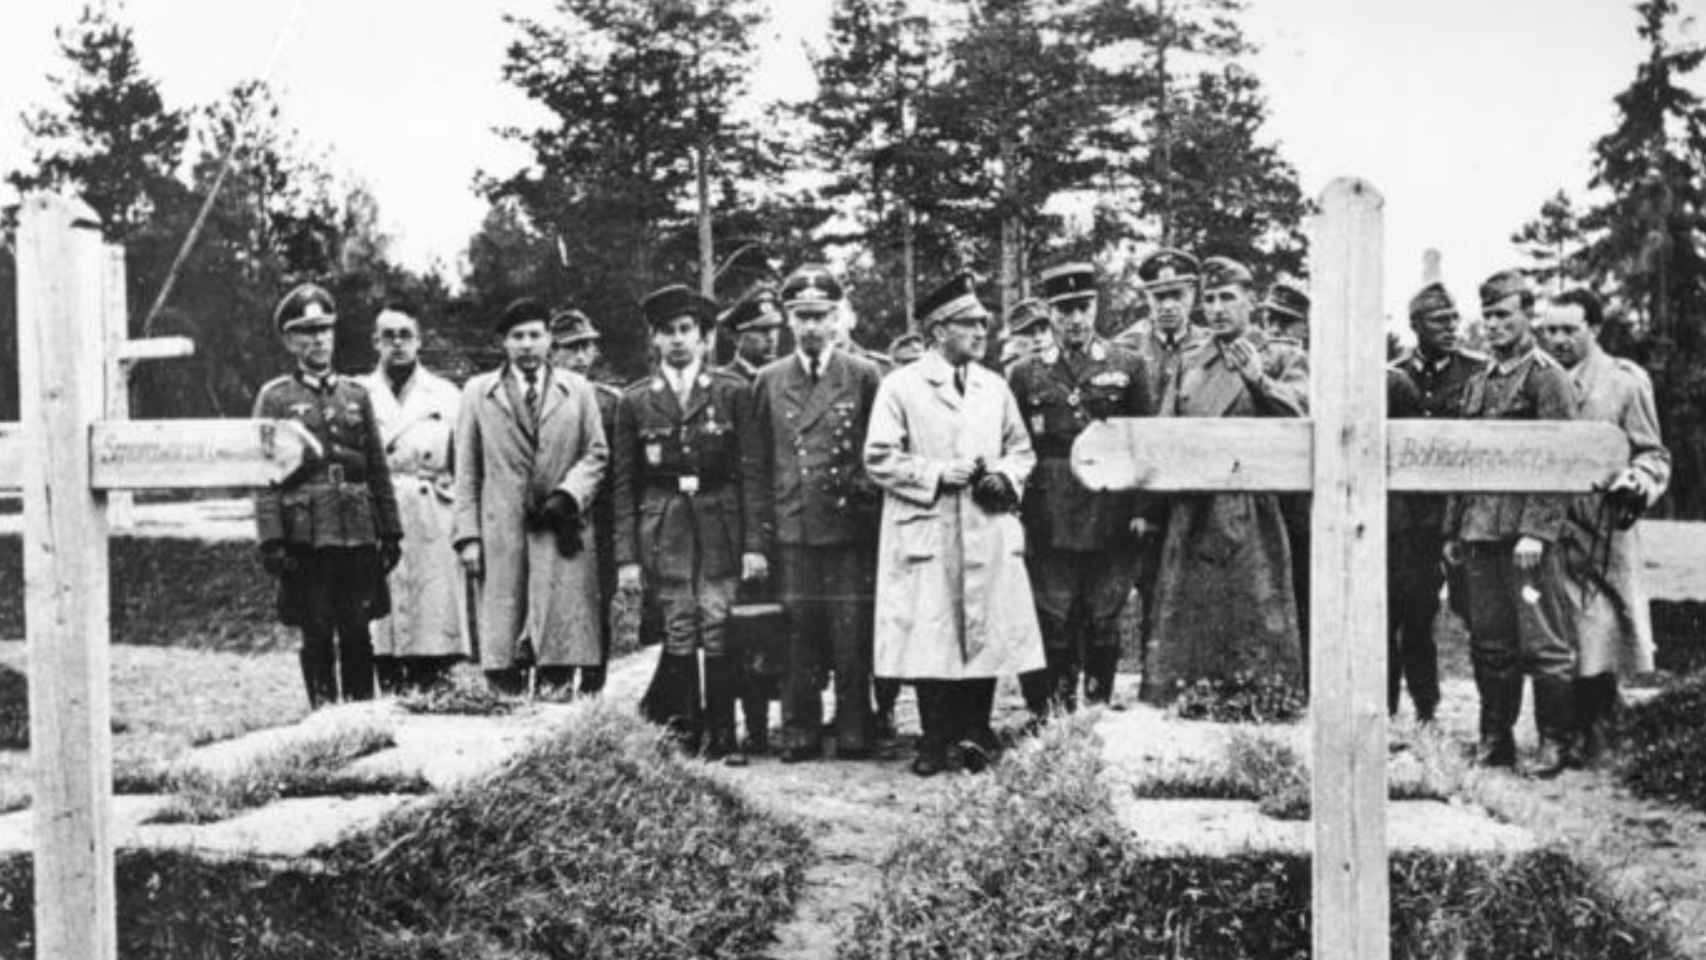 Brasillach (segundo por la izquierda) en Katyn, uno de los destinos de su gira propagandística con los nazis en 1943.3